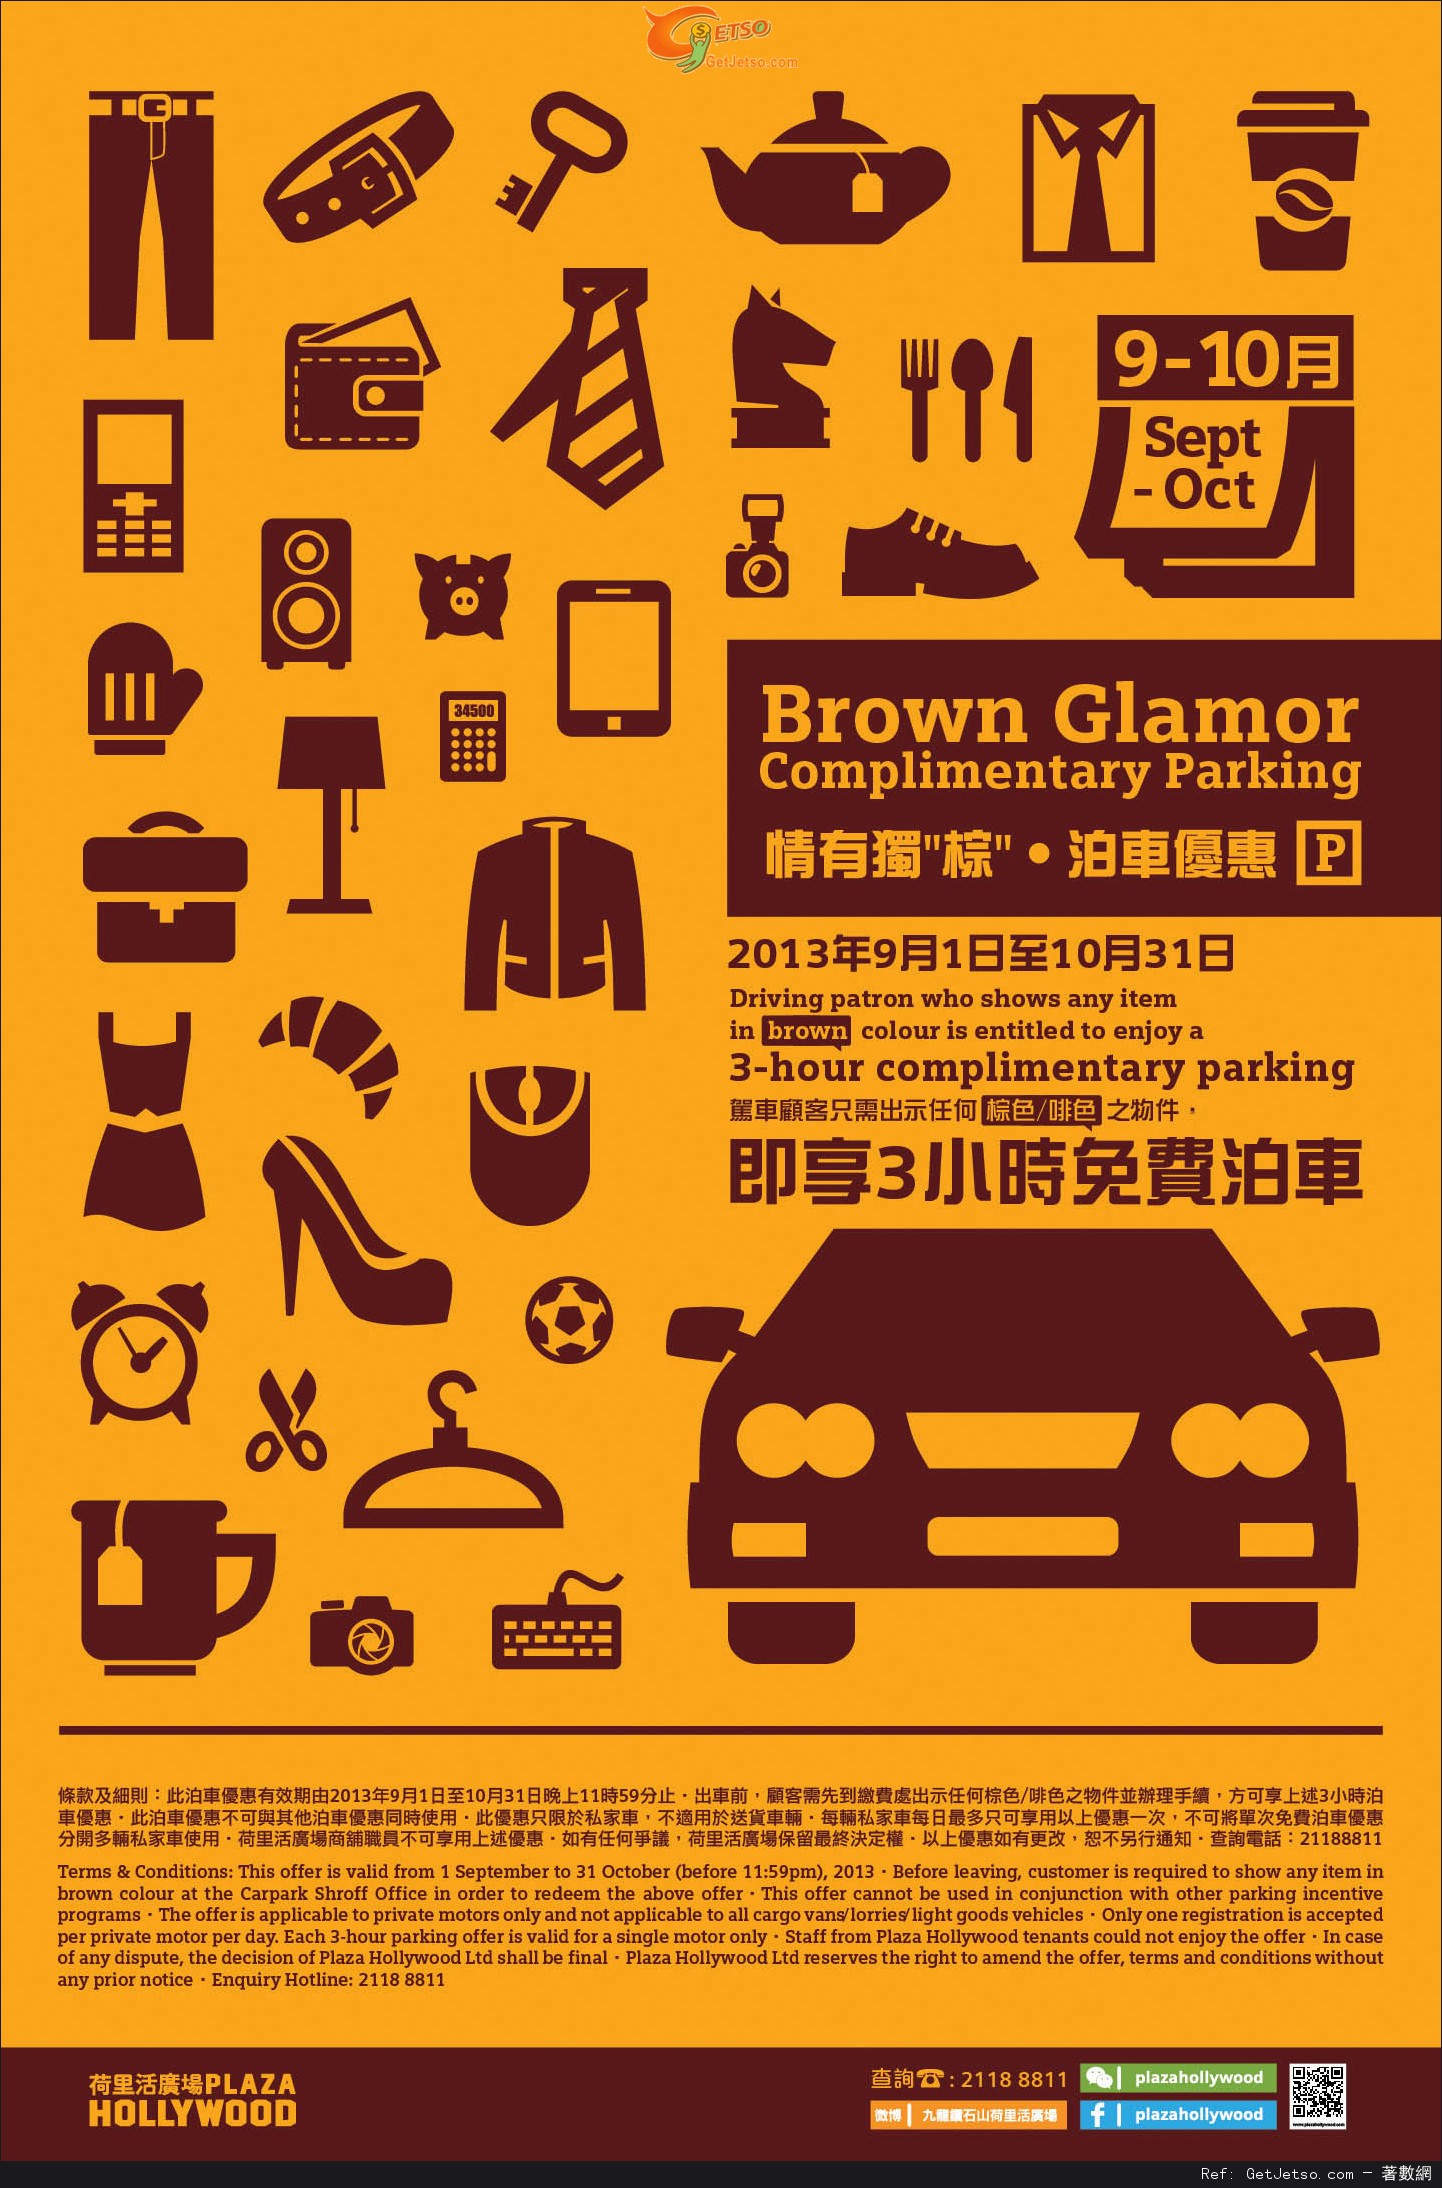 荷里活廣場出示任何啡色/棕色物件享3小時免費泊車優惠(至13年10月31日)圖片1